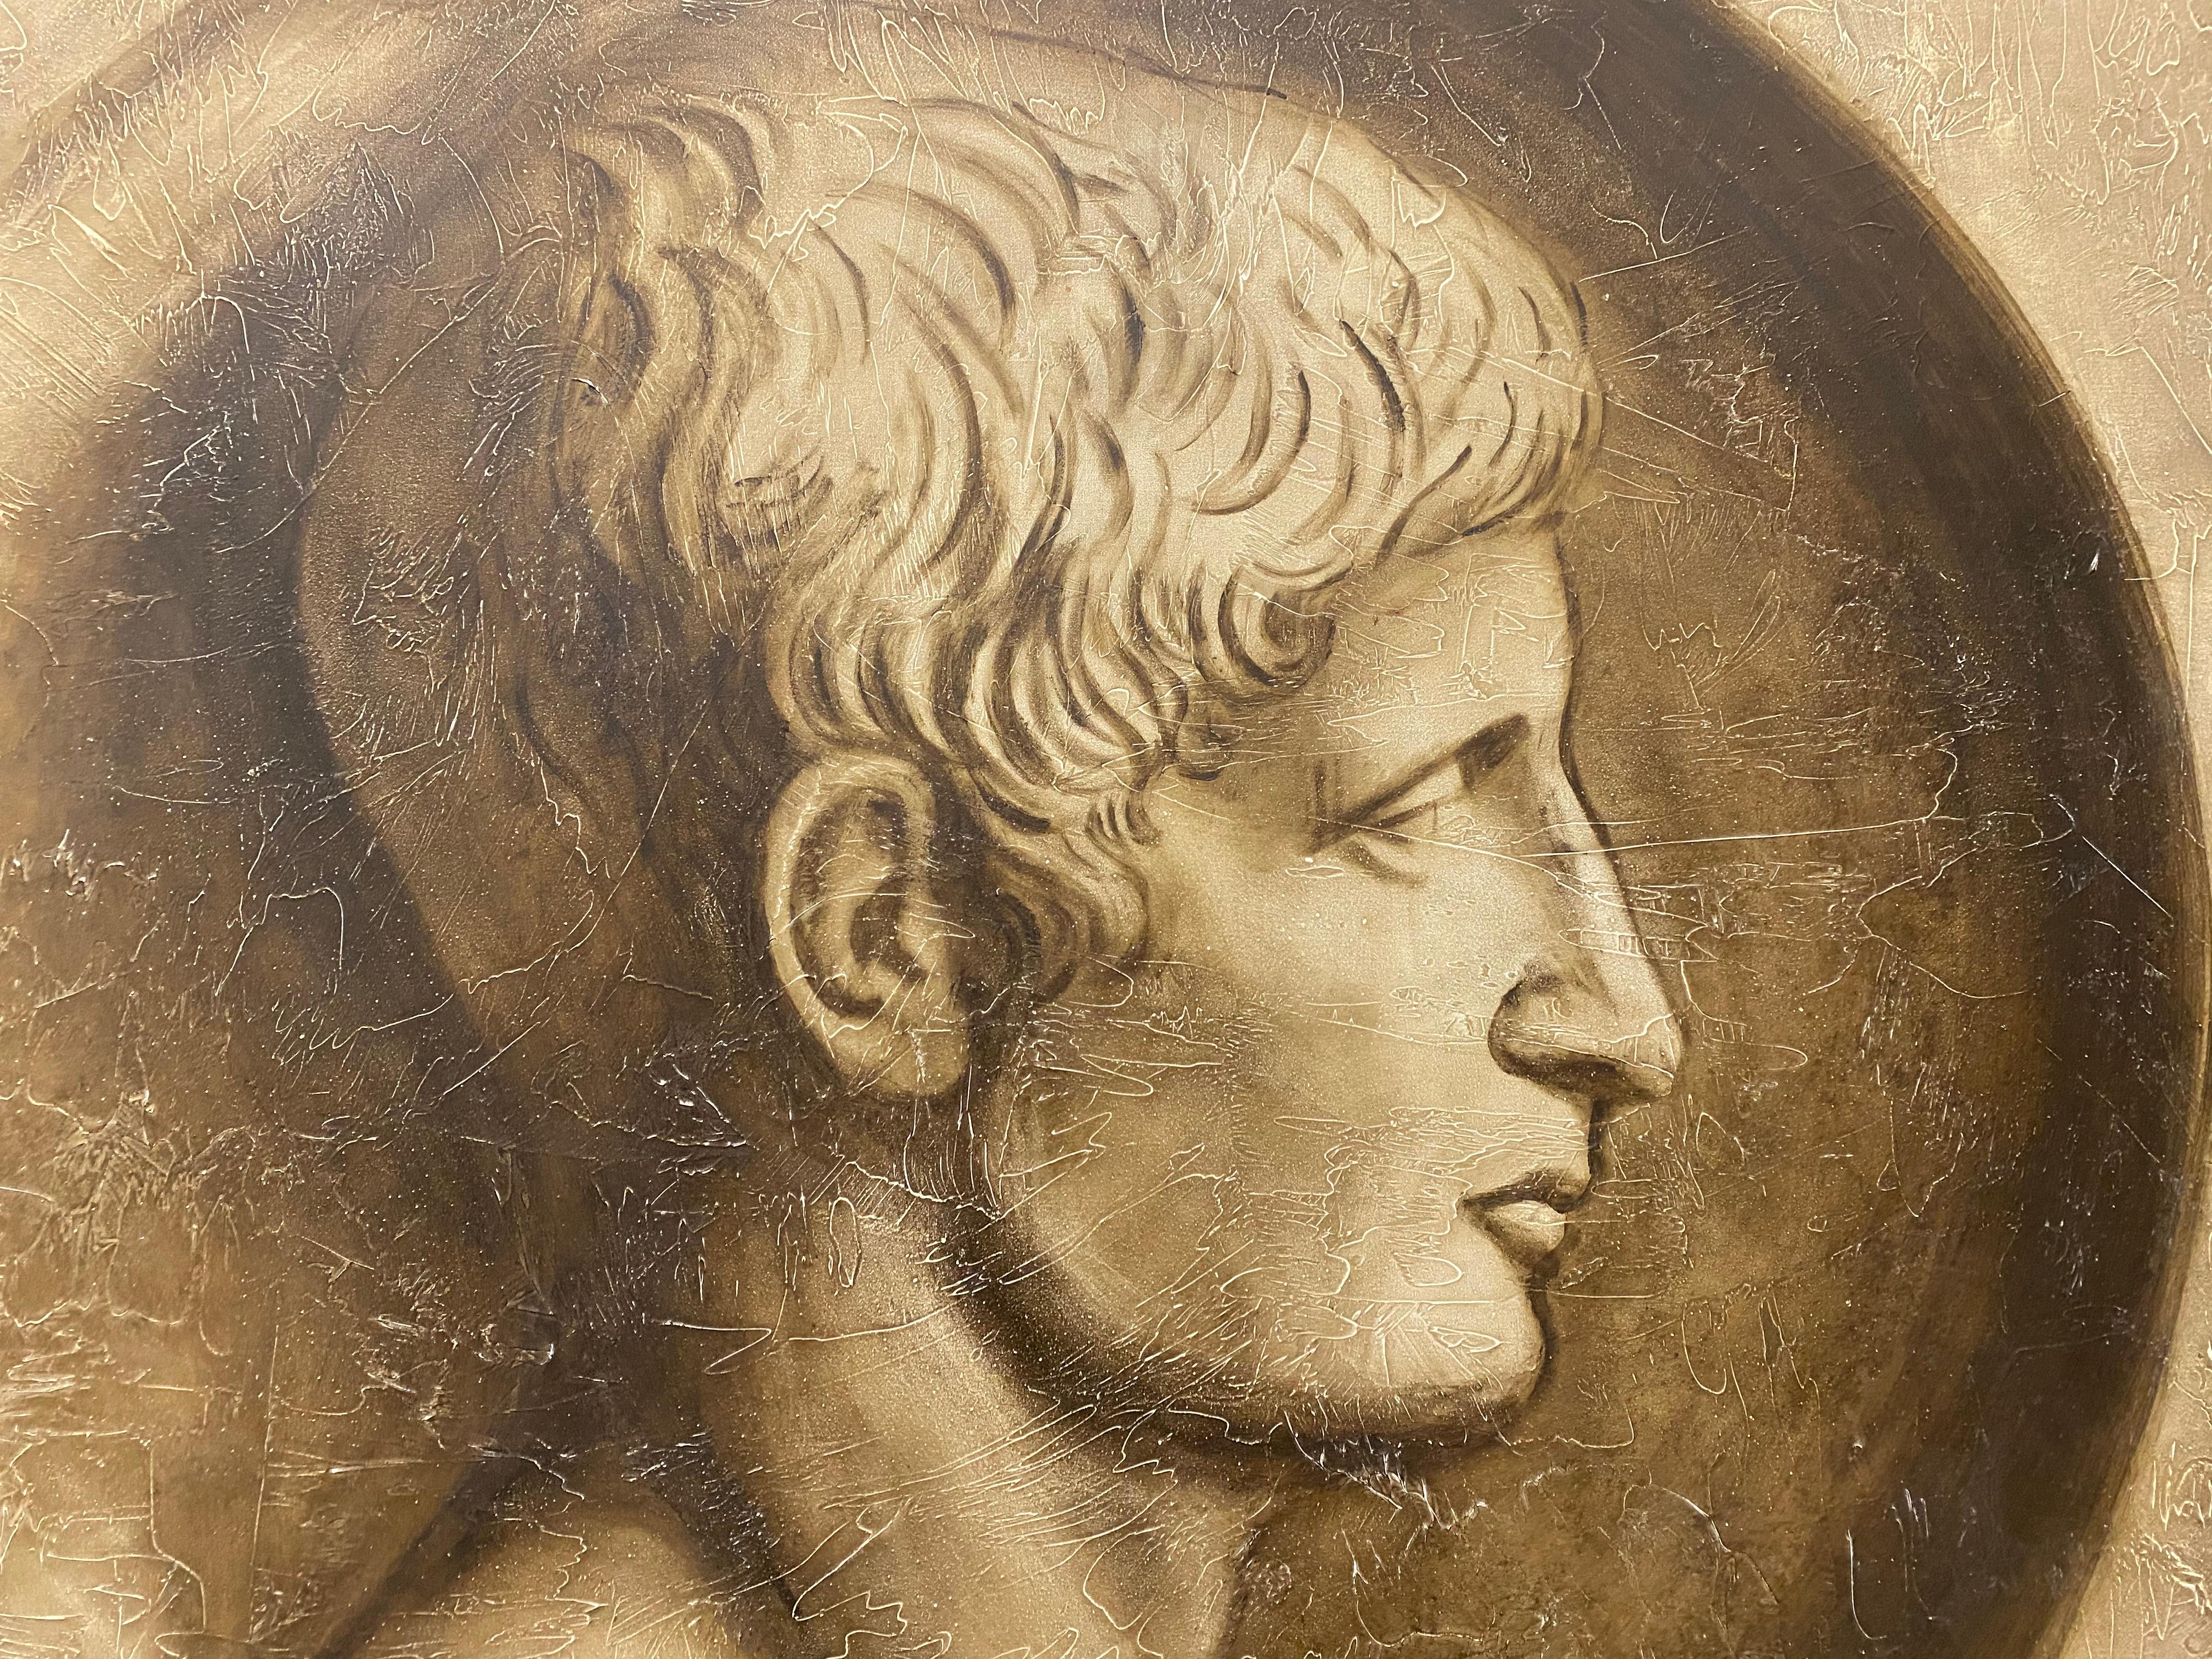 Large Scale Roman Oil Portrait by Tousignant c.1995 

Oil on canvas

Dimensions 48